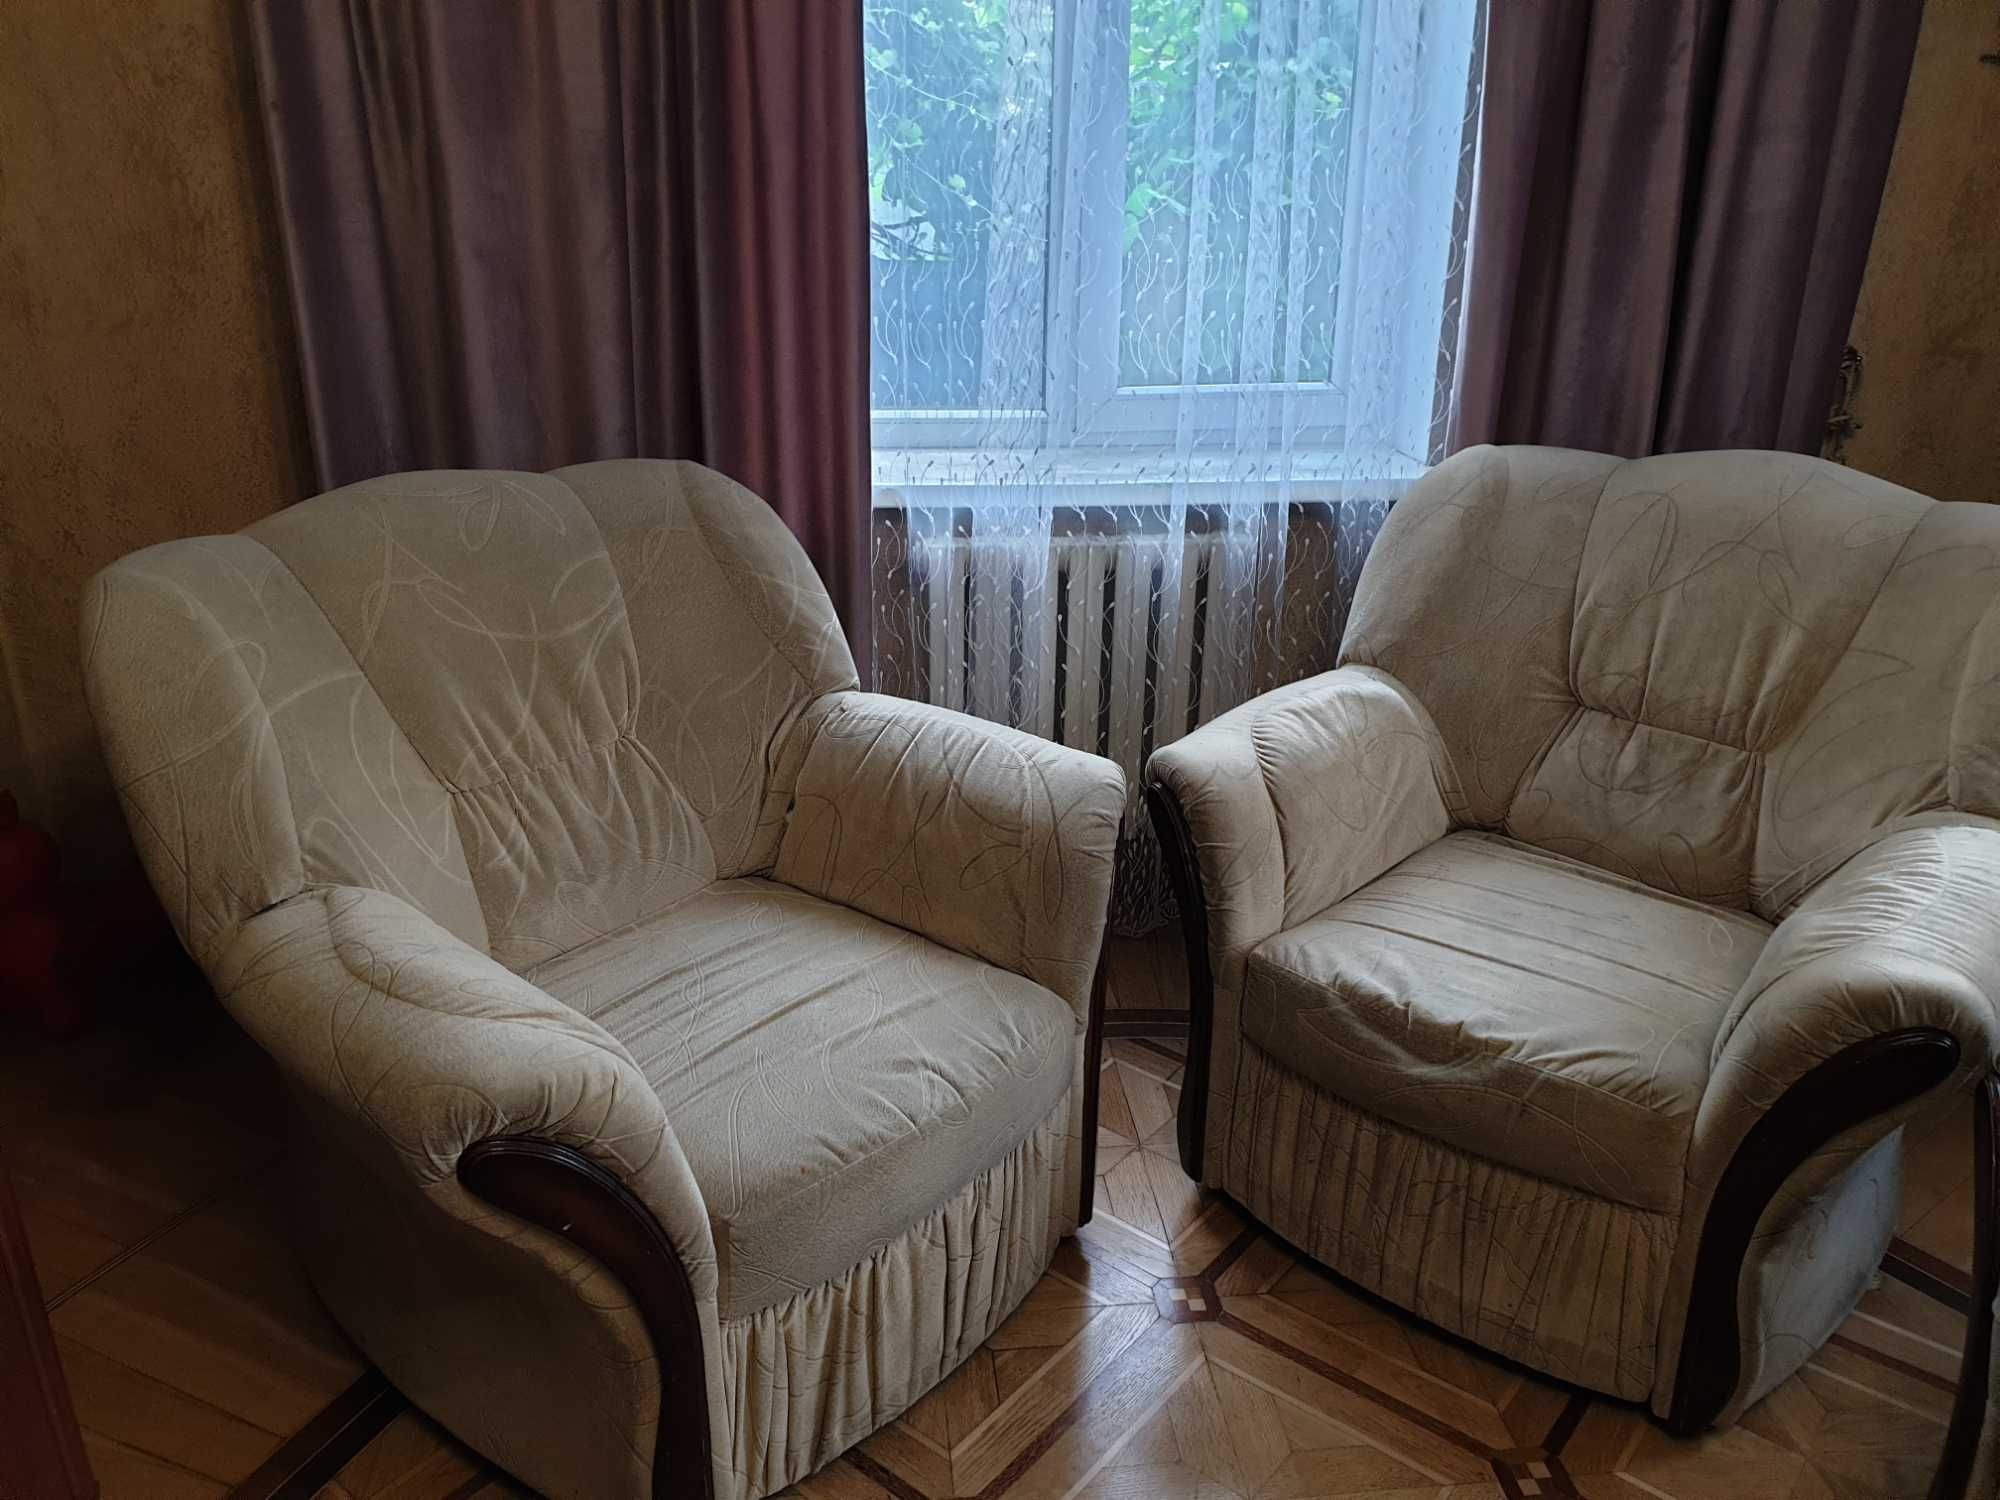 Продаётся диван-кровать + 2 кресла б/у